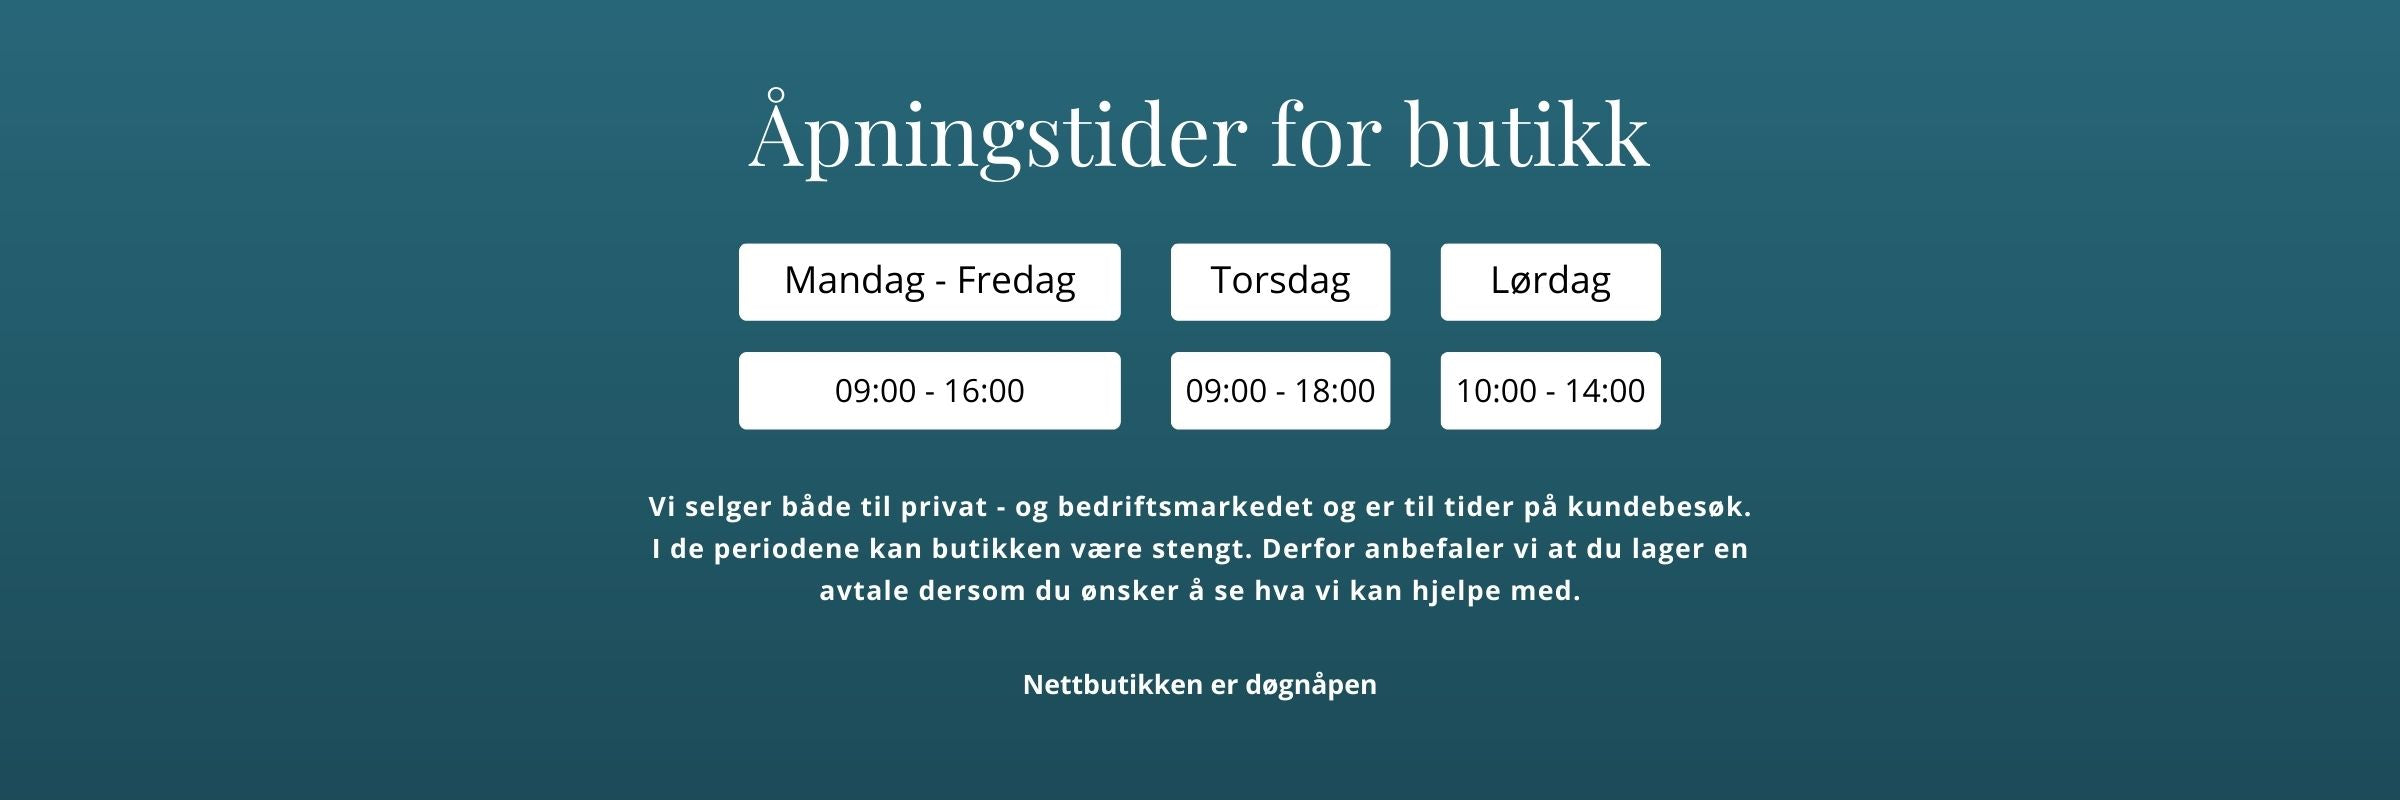 Åpningstider for butikk: Mandag - Fredag: 09:00 - 16:00, Torsdag: 09:00 - 18:00, Lørdag: 10:00 - 14:00 - IN-Print på Raufoss